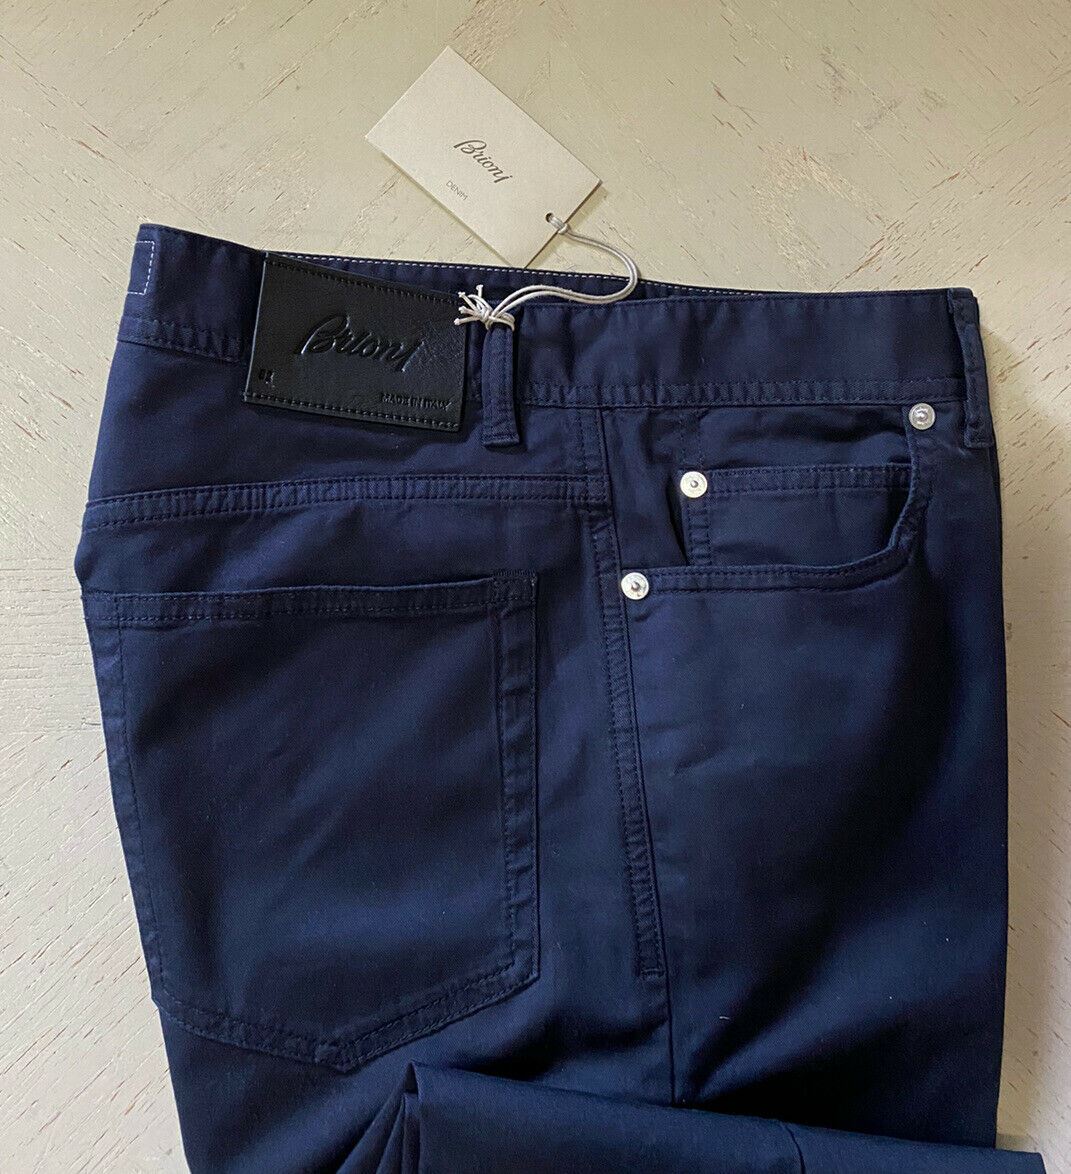 NWT $840 Brioni Men’s Jeans Pants Navy 32 US/48 Eu Italy